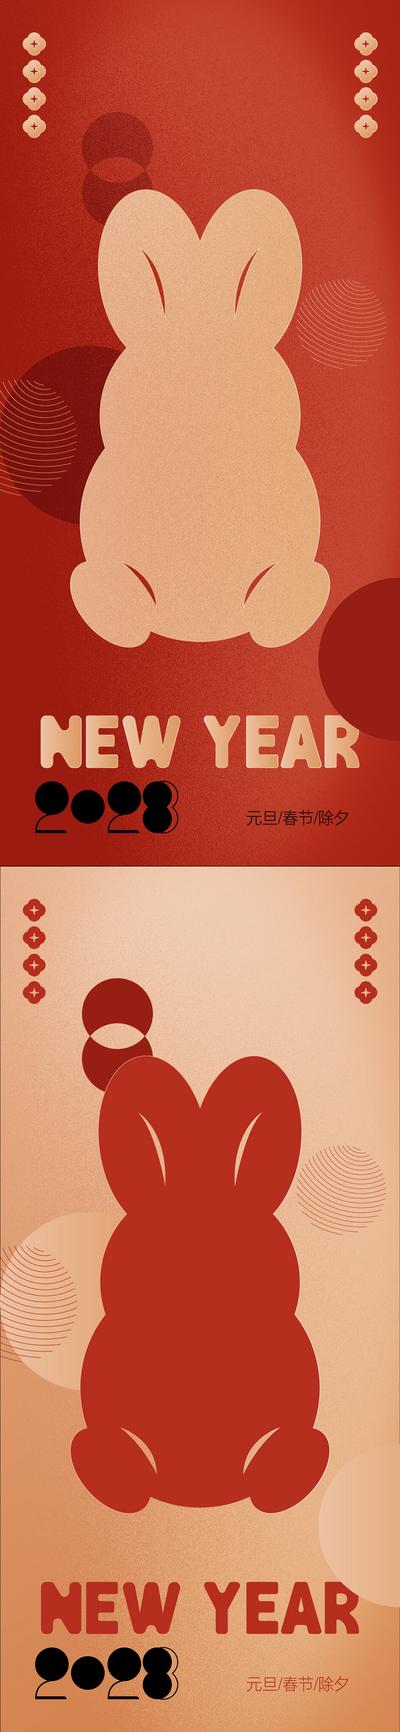 南门网 海报 中国传统节日 长图 房地产 新春 宫灯 剪纸 铲金币 暖场活动